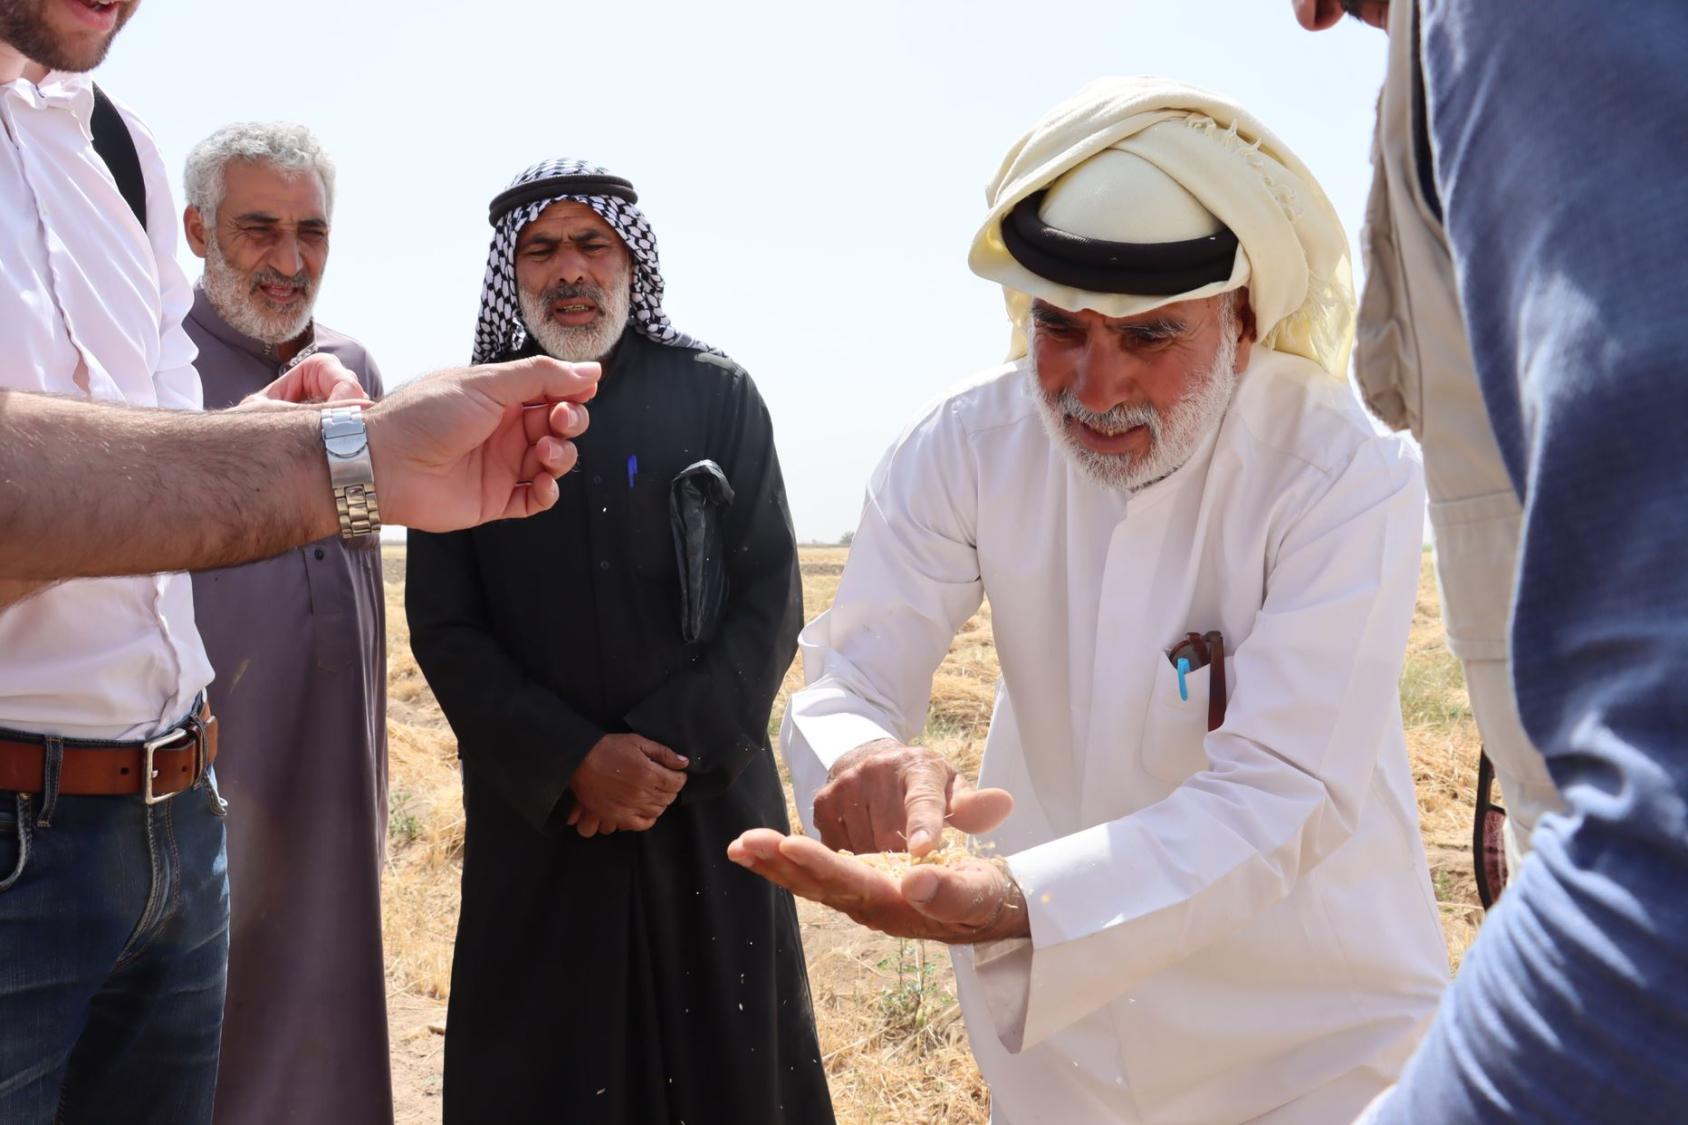 En Syrie, au milieu d’un terrain aride, un homme portant une djellaba blanche et un turban de couleur beige se penche vers la caméra en inspectant les céréales qu’il tient dans la main, entouré de plusieurs autres hommes.